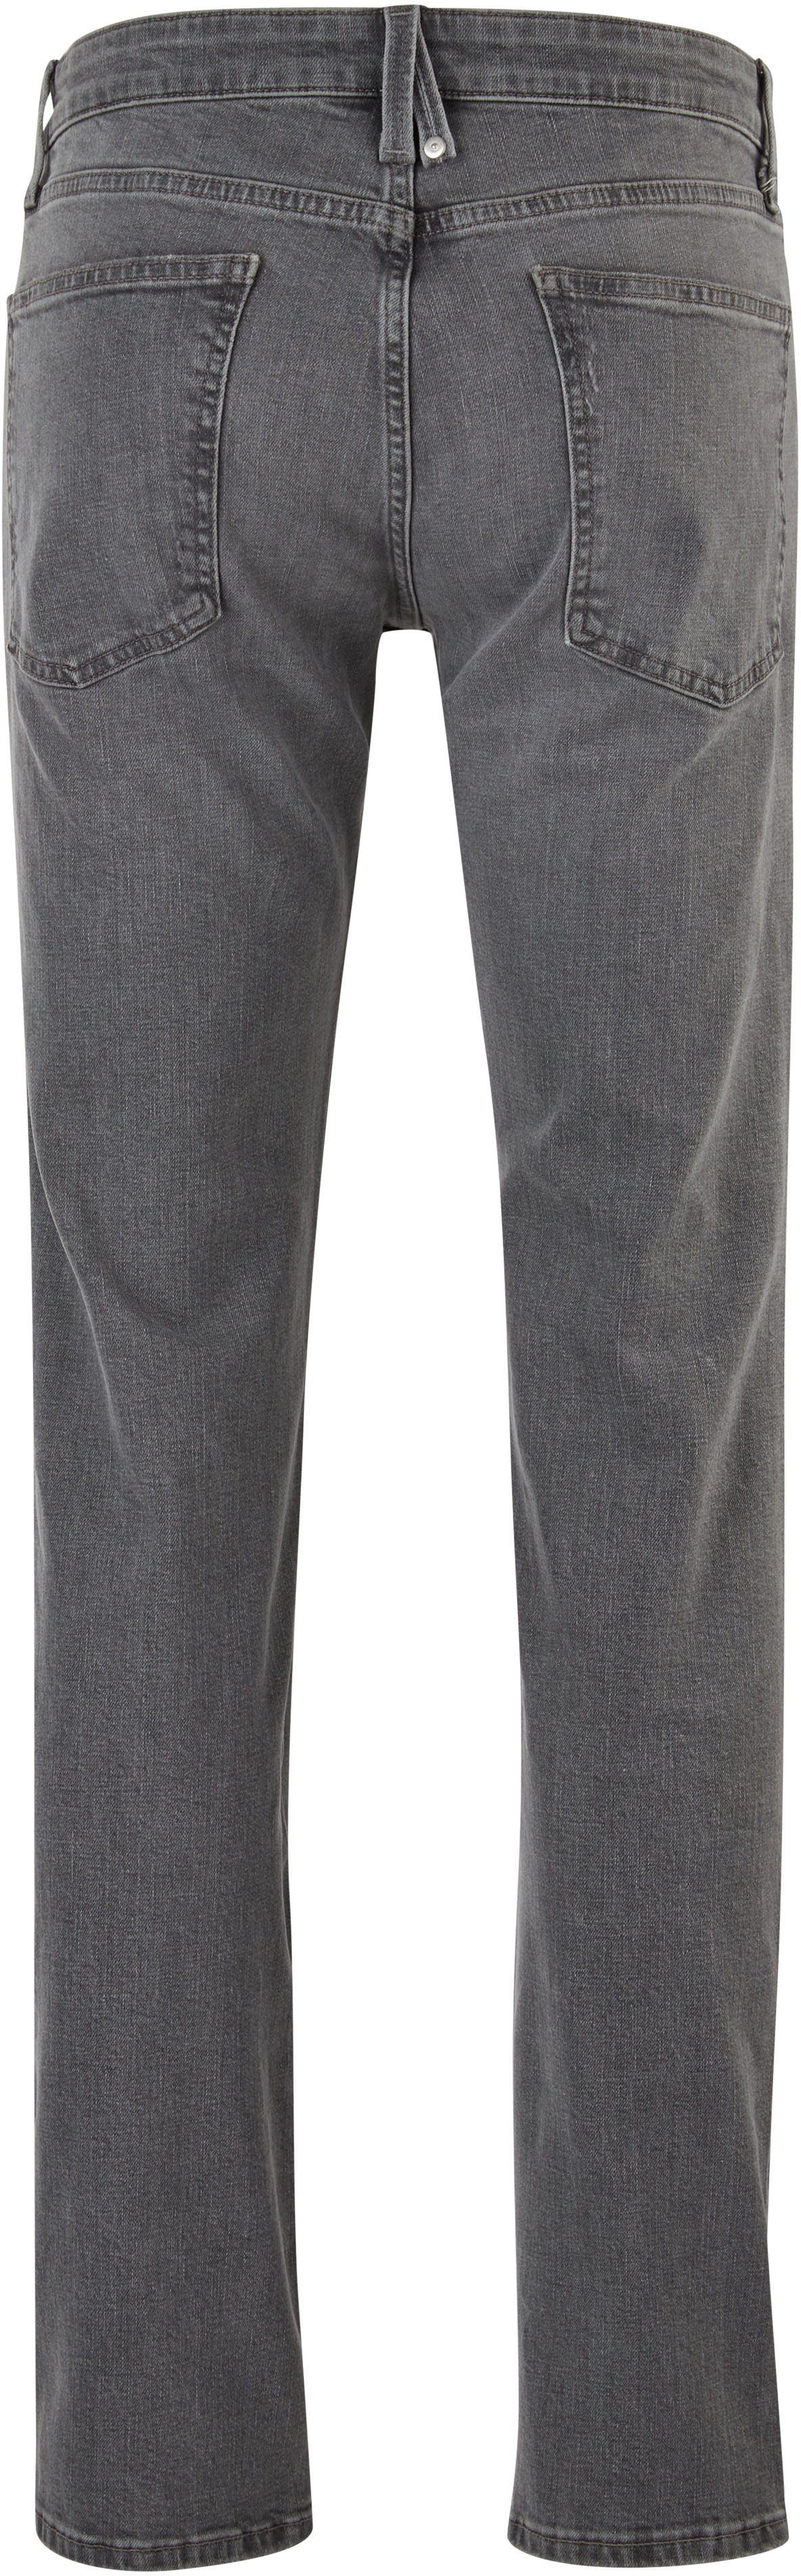 s.Oliver 5-Pocket-Jeans authentischer mit stein-grau Waschung